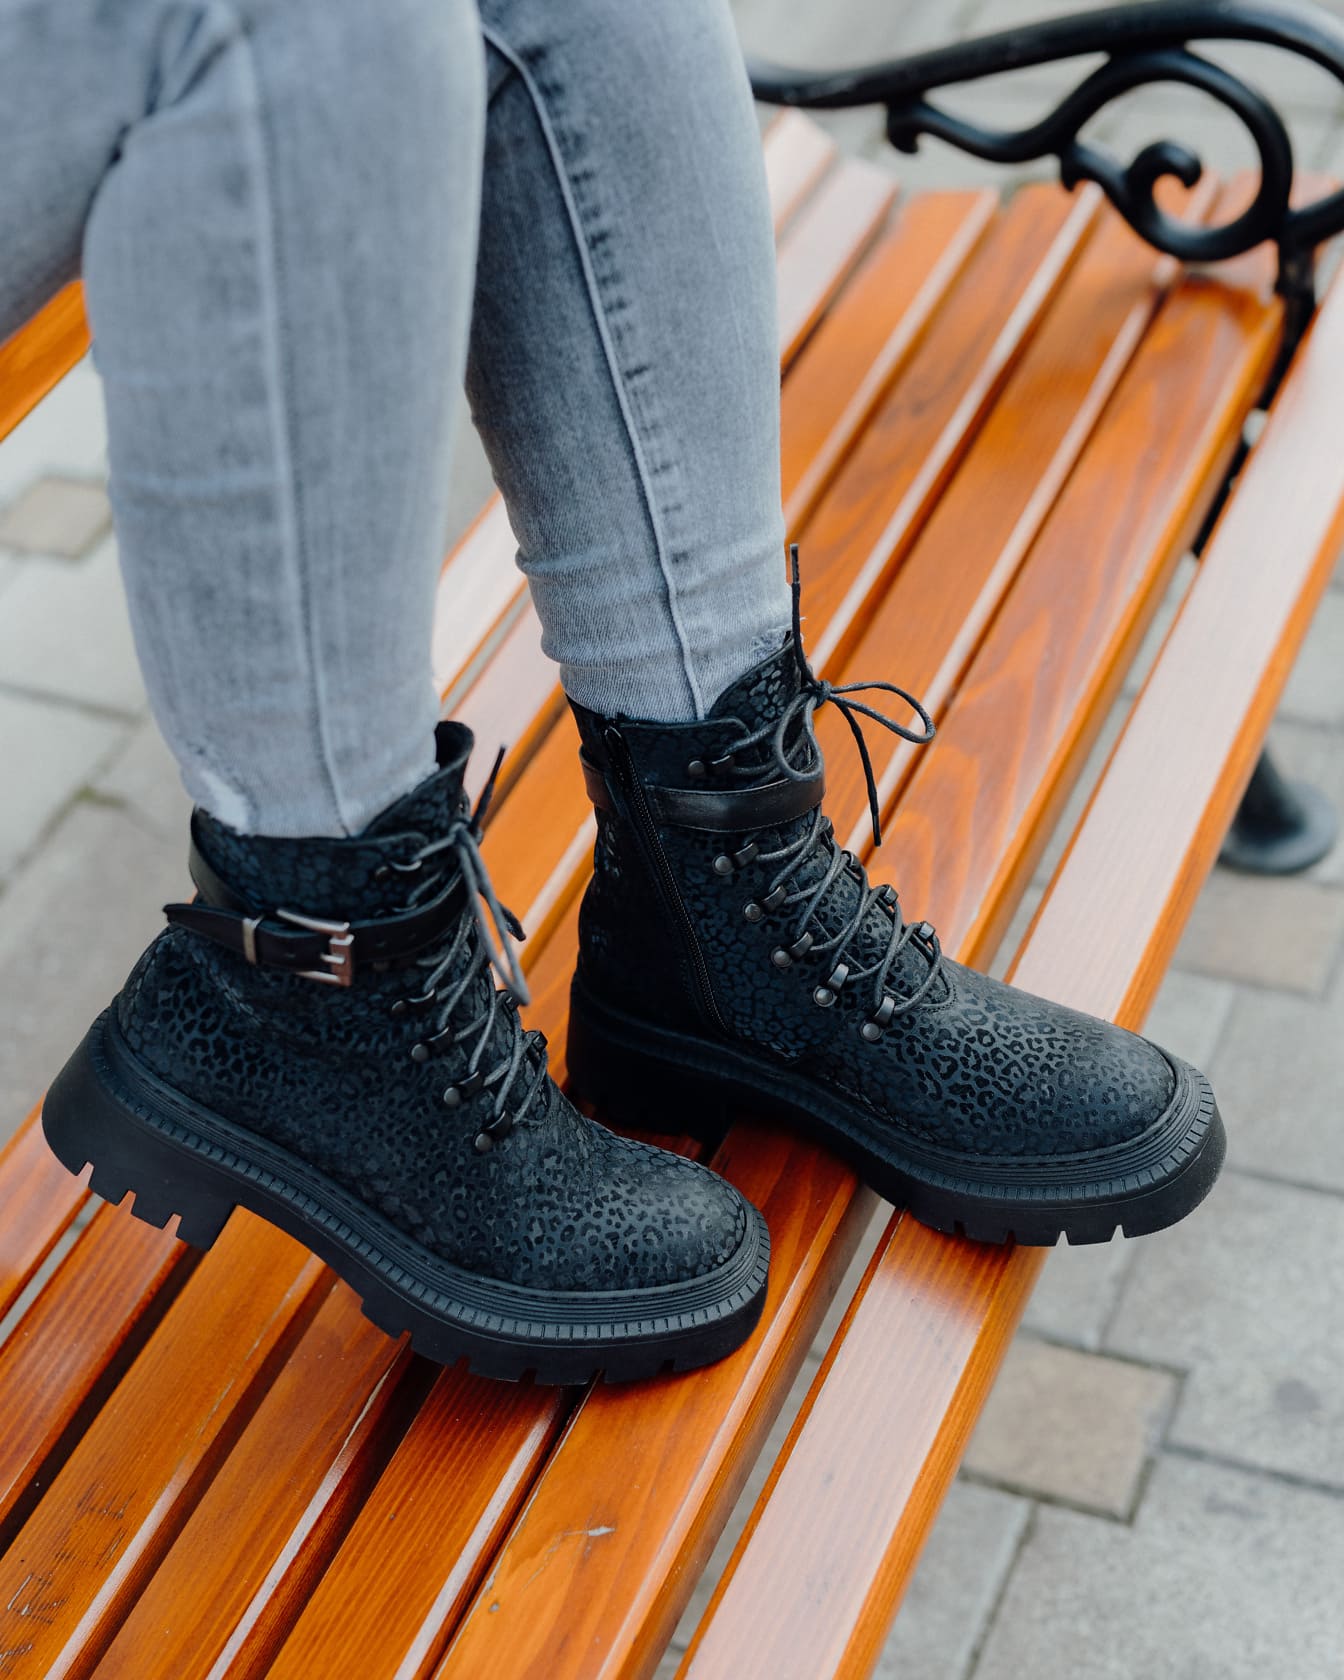 De benen van de persoon in jeansbroek en zwarte moderne laarzen op een houten bank